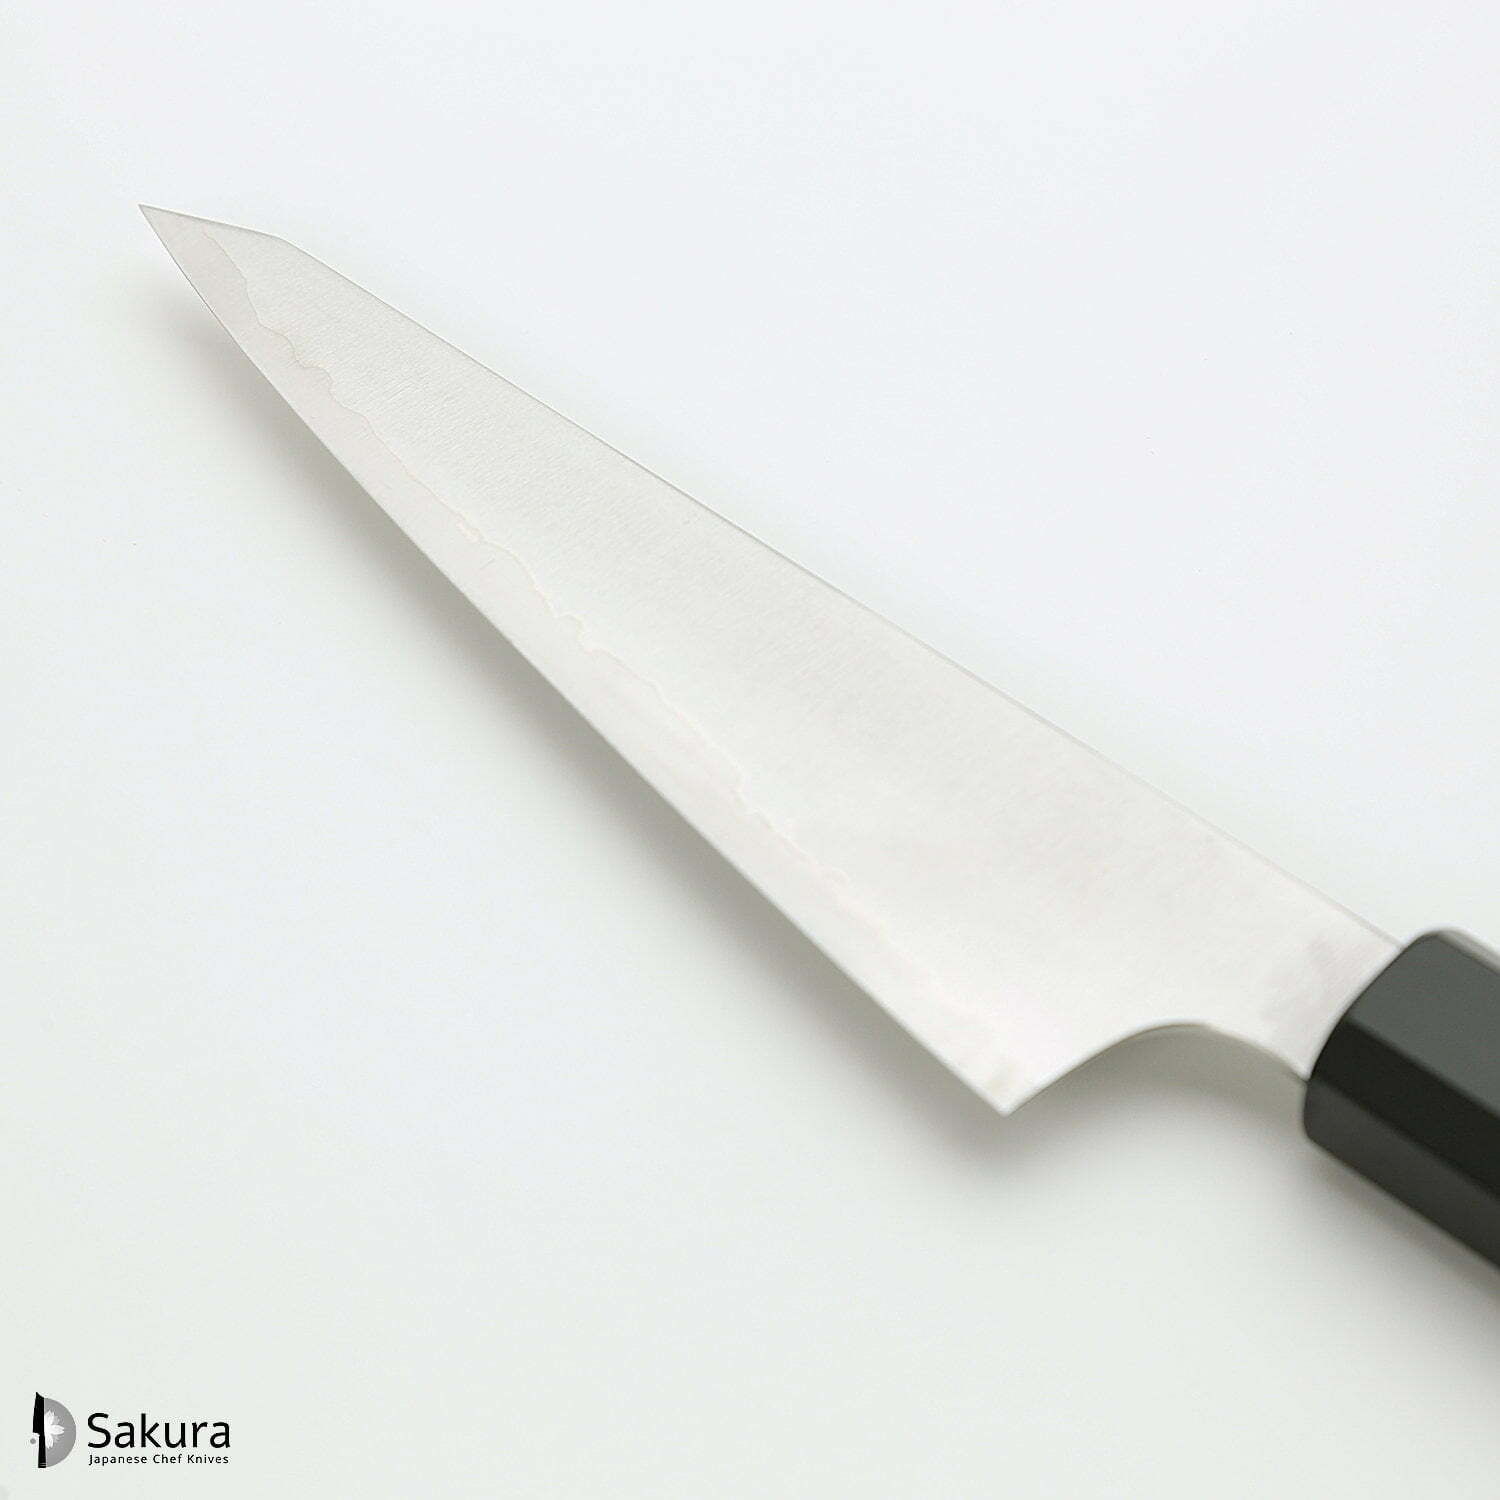 סכין פירוק בשר/עופות הוֹנְייסוּקִי 150מ״מ מחושלת בעבודת יד 3 שכבות: פלדת פחמן יפנית מתקדמת מסוג HAP40 עטופה פלדת אל-חלד גימור מט מלוטש האטסו קוקורו יפן